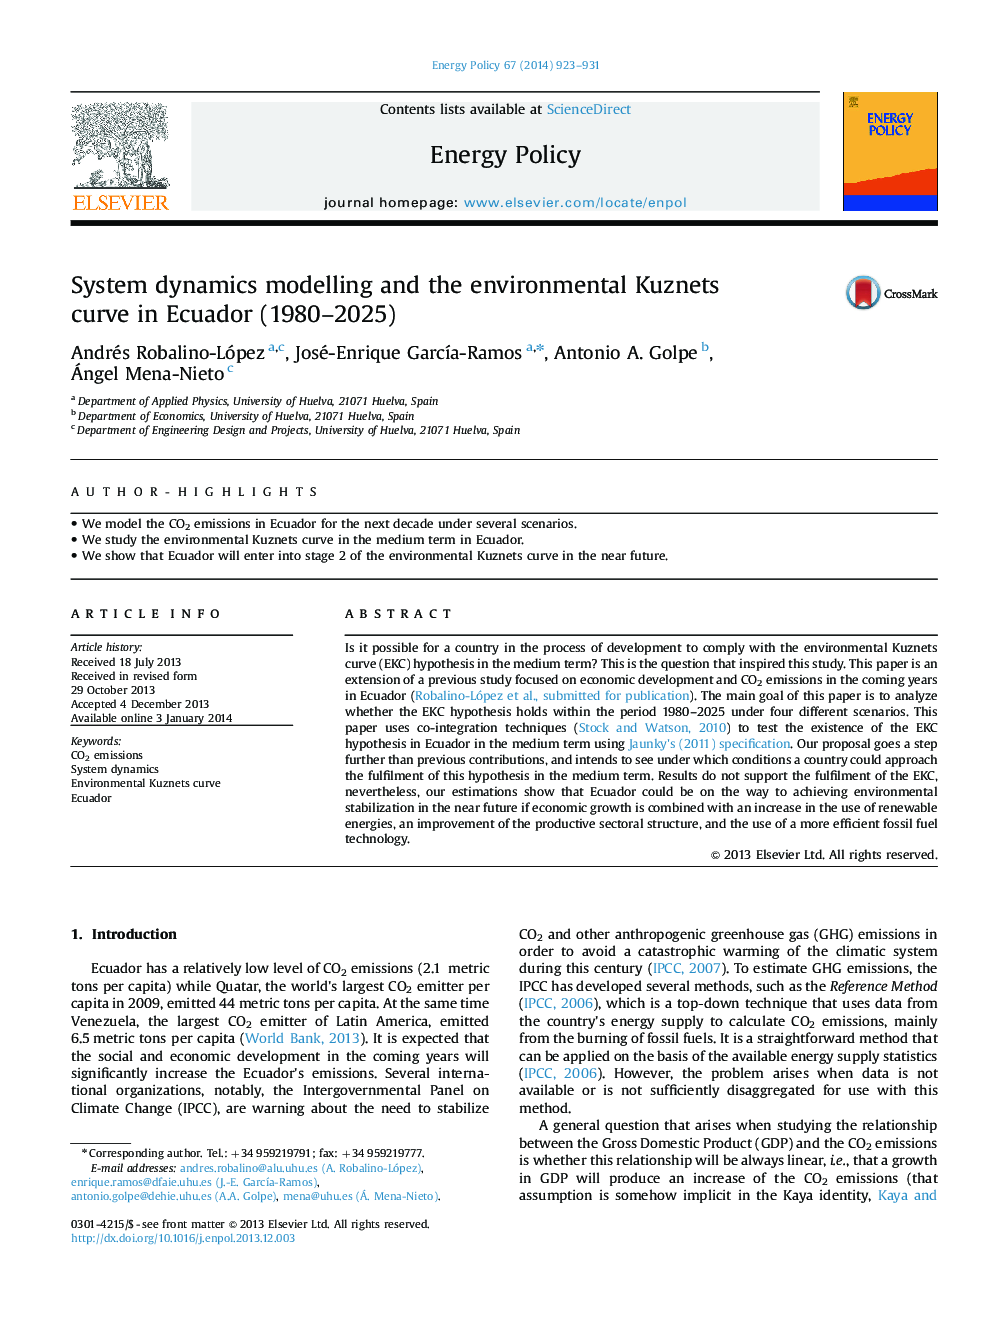 مدل سازی پویایی سیستم و منحنی کوزنتس محیط زیست در اکوادور (1980-2025) 